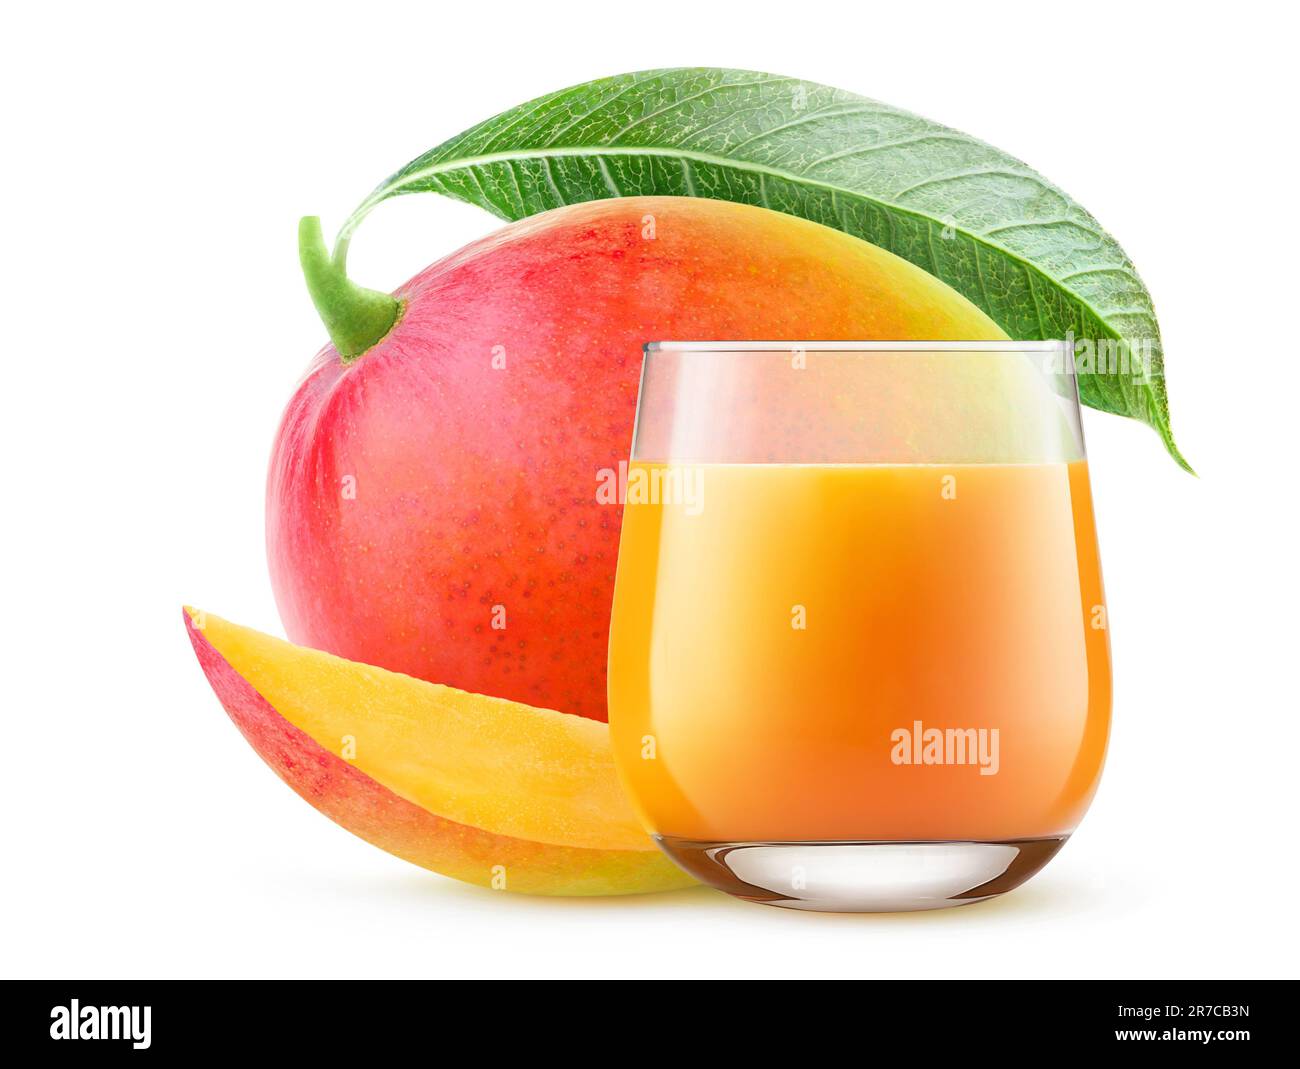 Jus de mangue dans un verre et fruits frais de mangue rouge avec feuille, isolés sur blanc Banque D'Images